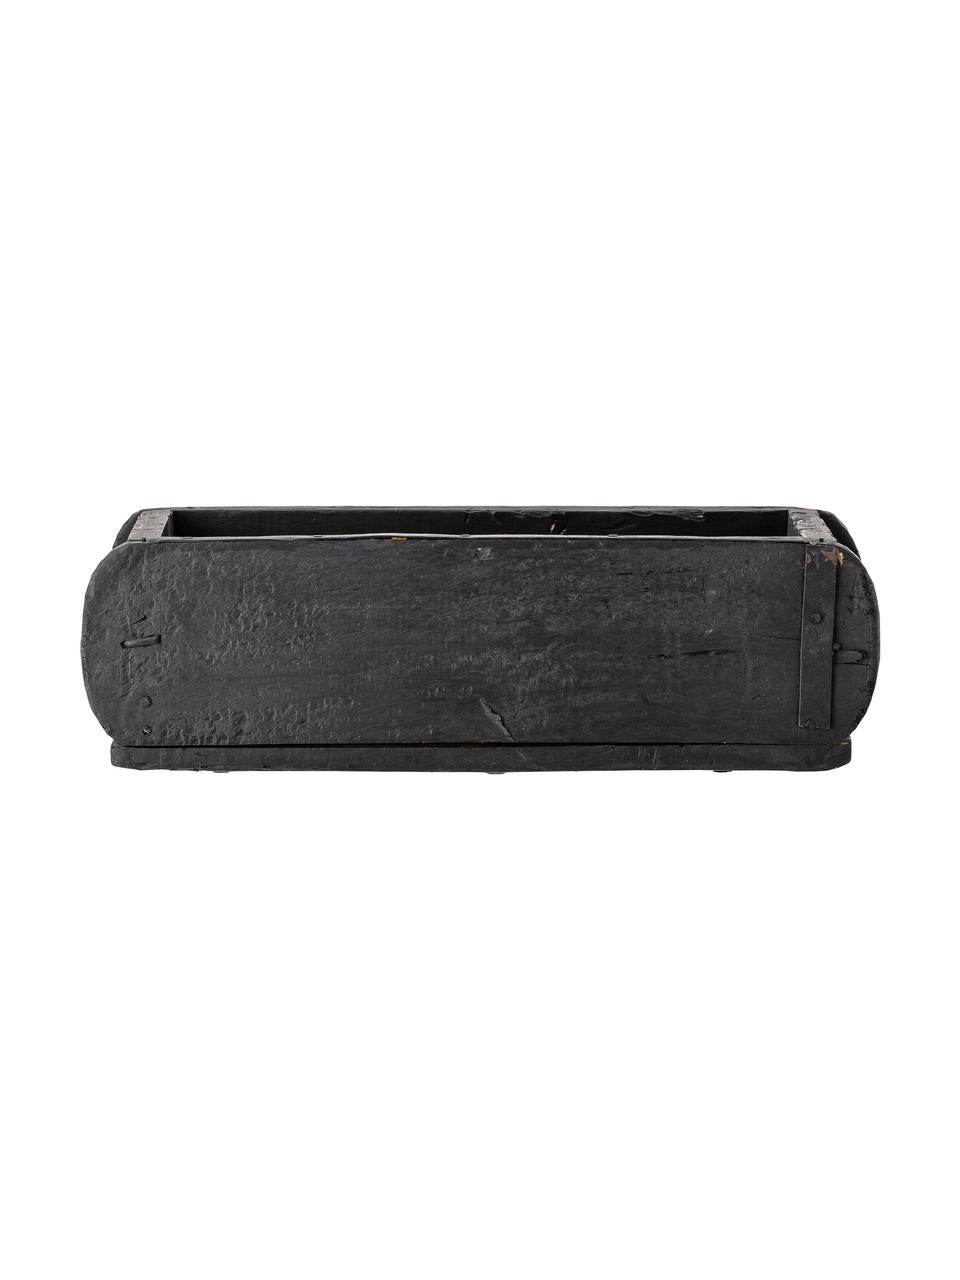 Handgefertigte Aufbewahrungsbox Janemaria aus recyceltem Holz, Recyceltes Holz, wachsbeschichtet, Schwarz, B 30 x H 10 cm